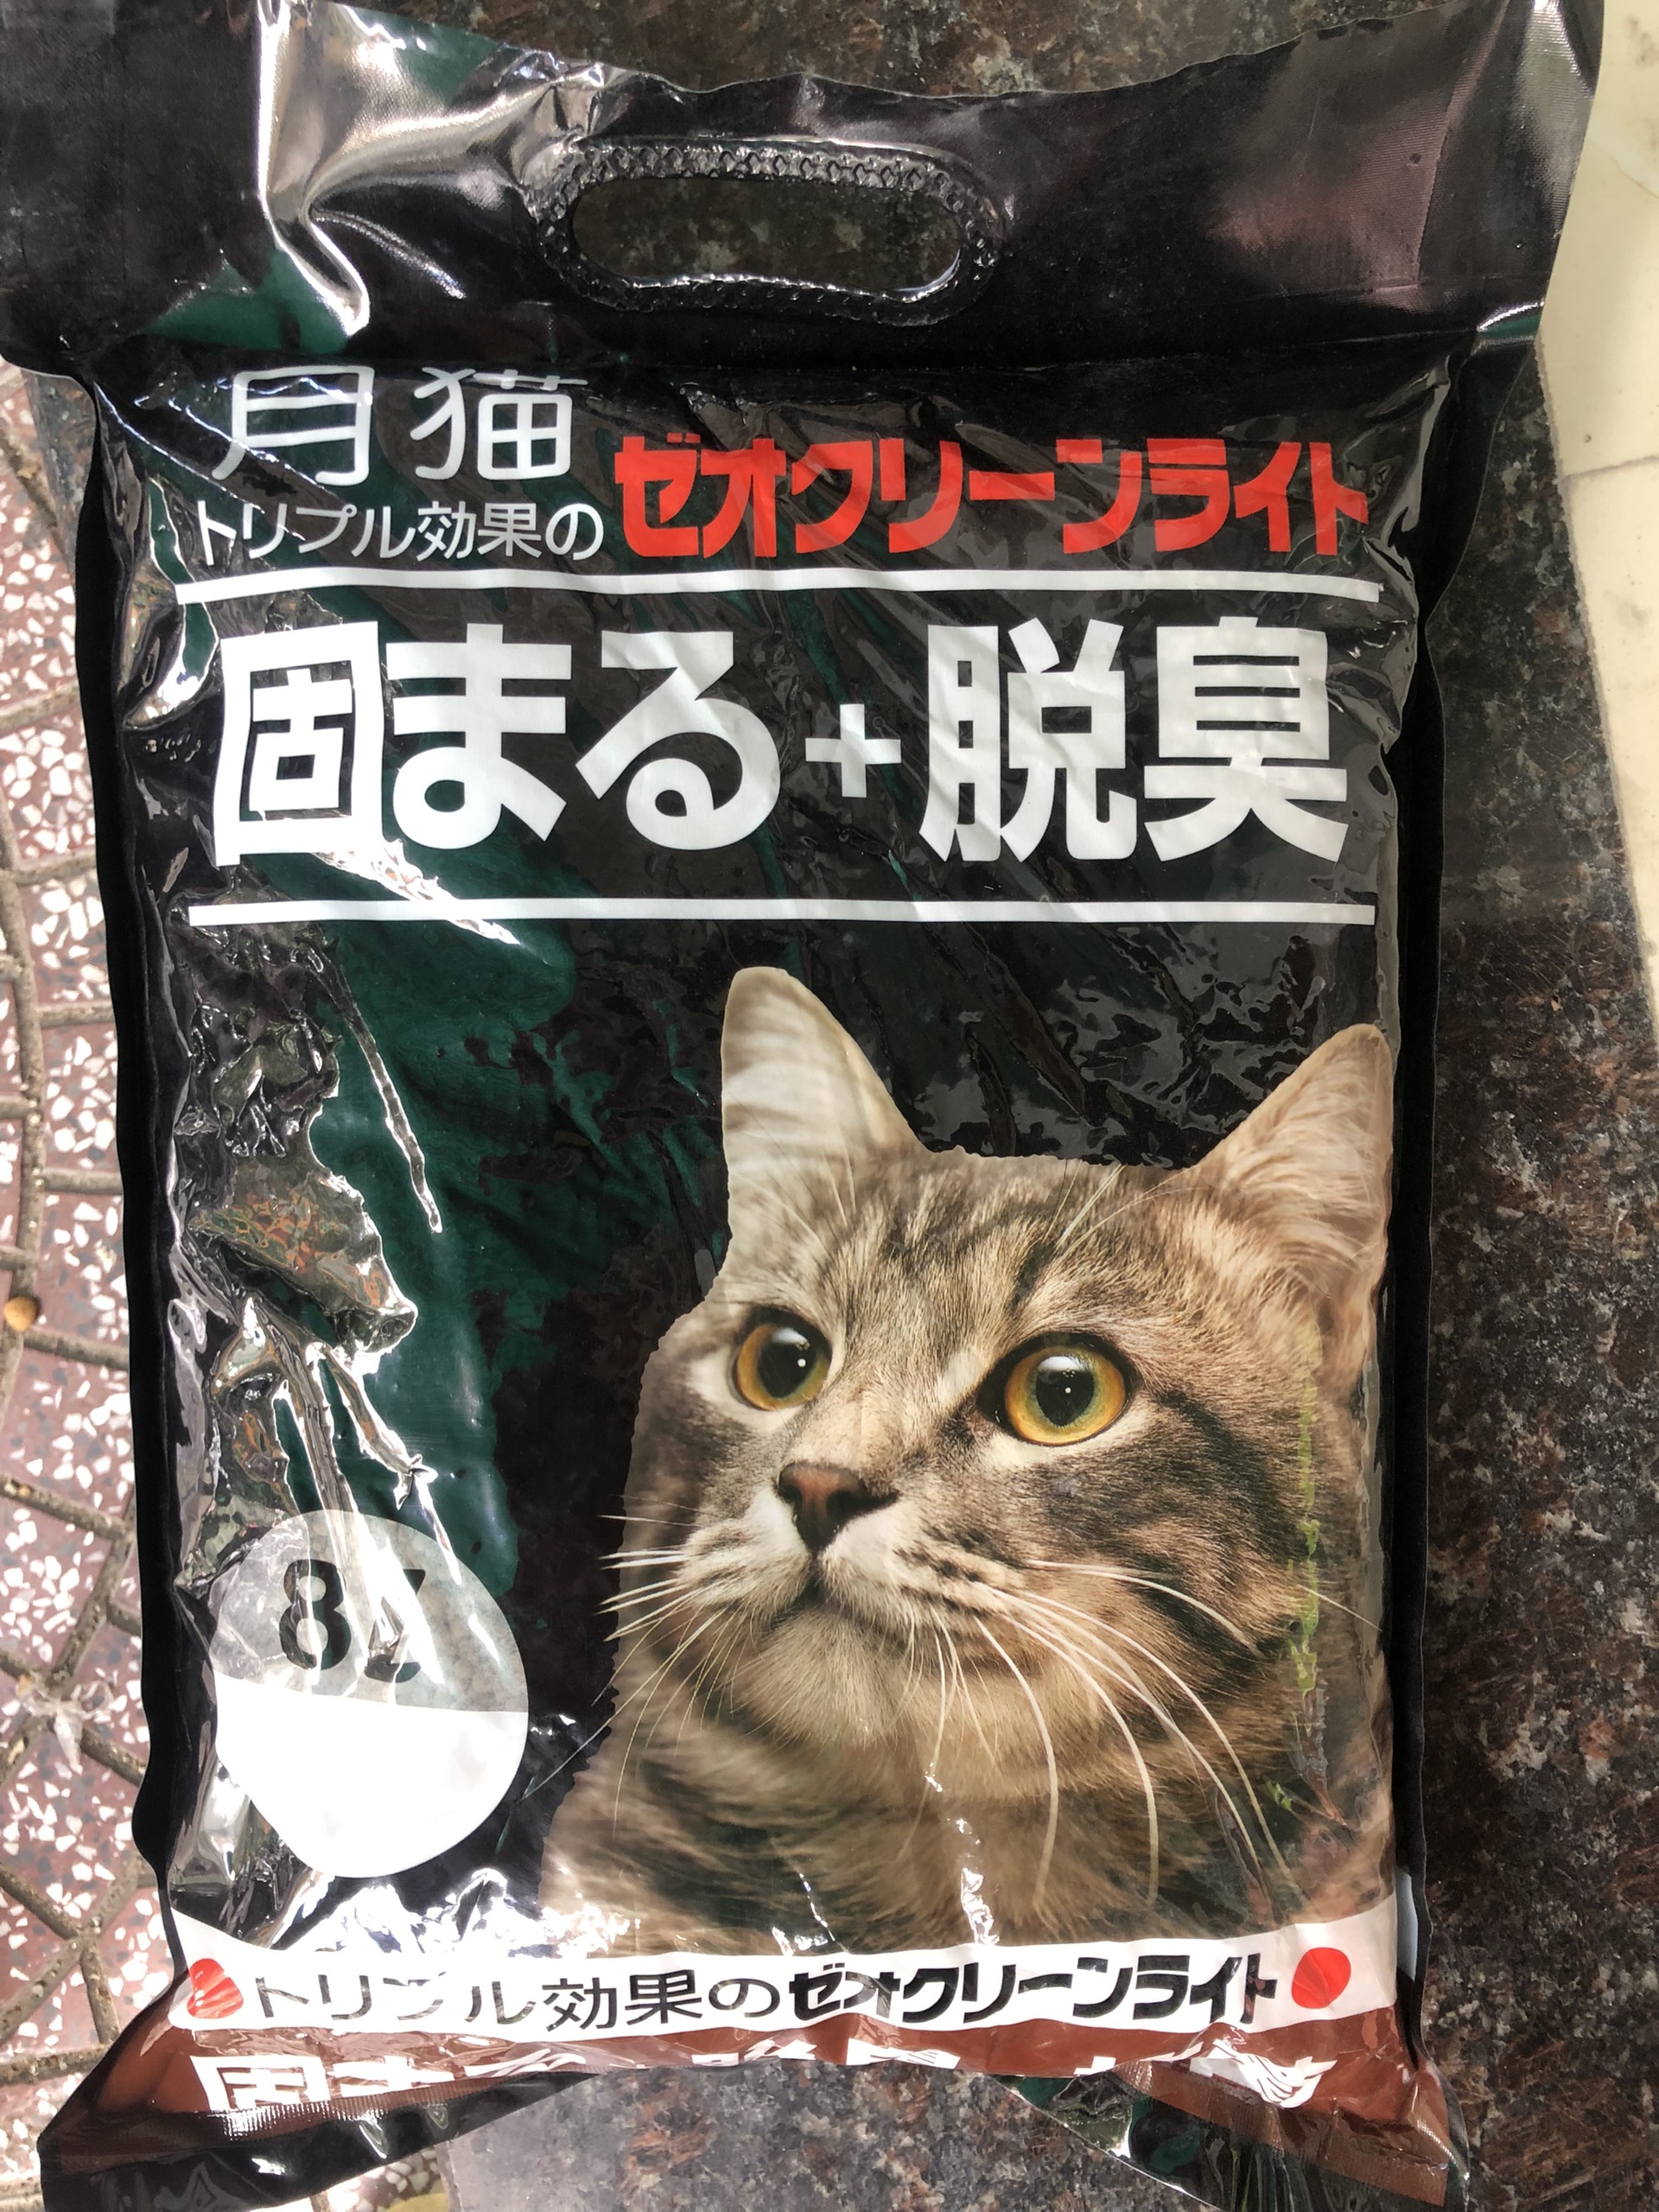 Cát vệ sinh cho mèo cát nhật 8L 4 mùi hương [giao mùi ngẫu nhiên]